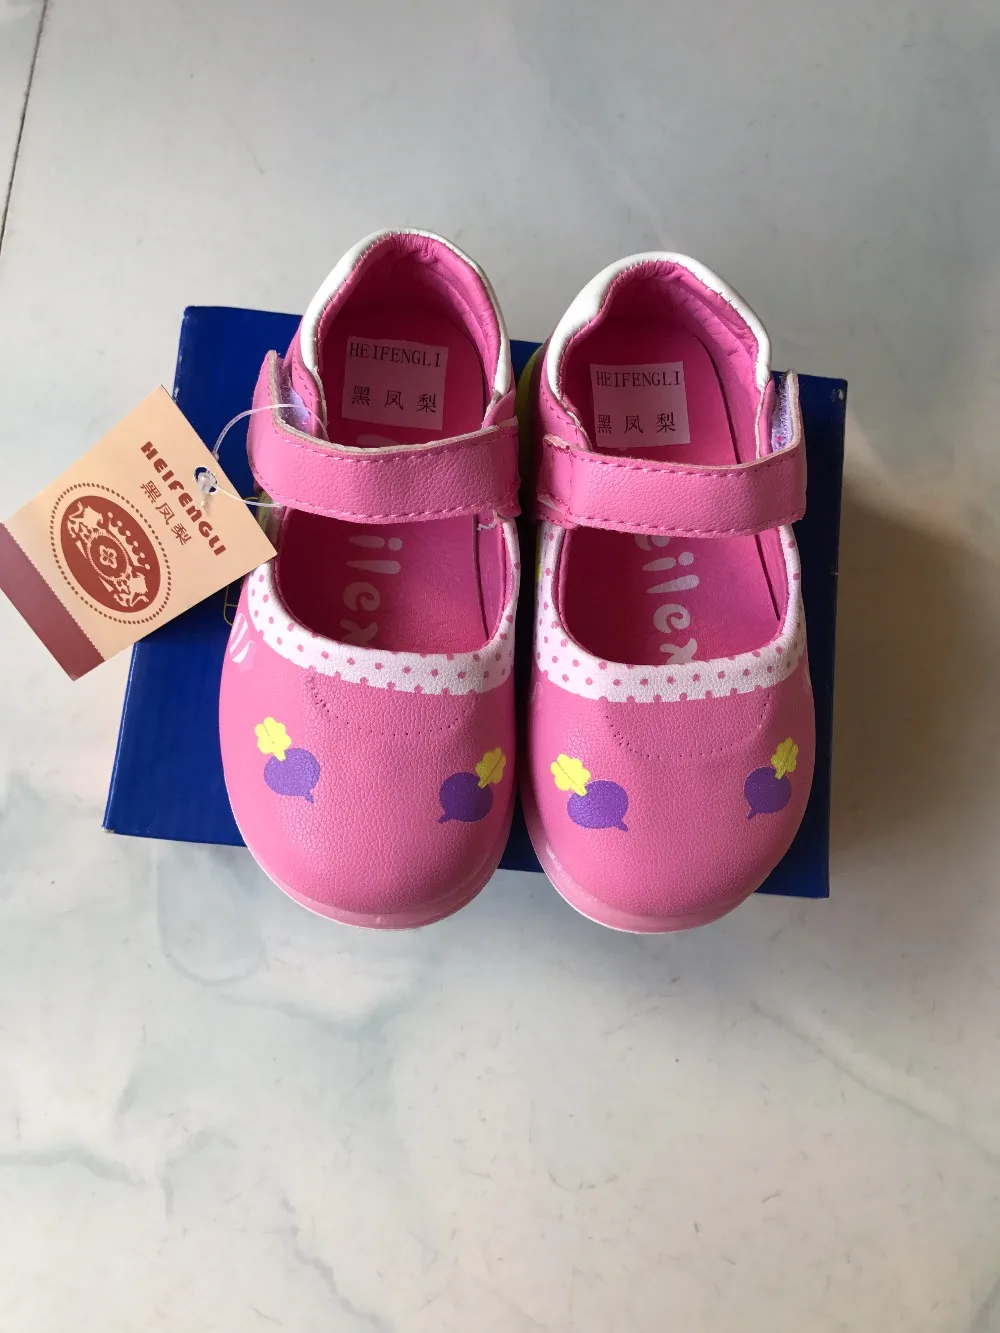 2017, Новая мода Дети Обувь свет Обувь дети тапки Обувь легкие крылья USB детская Спортивная обувь